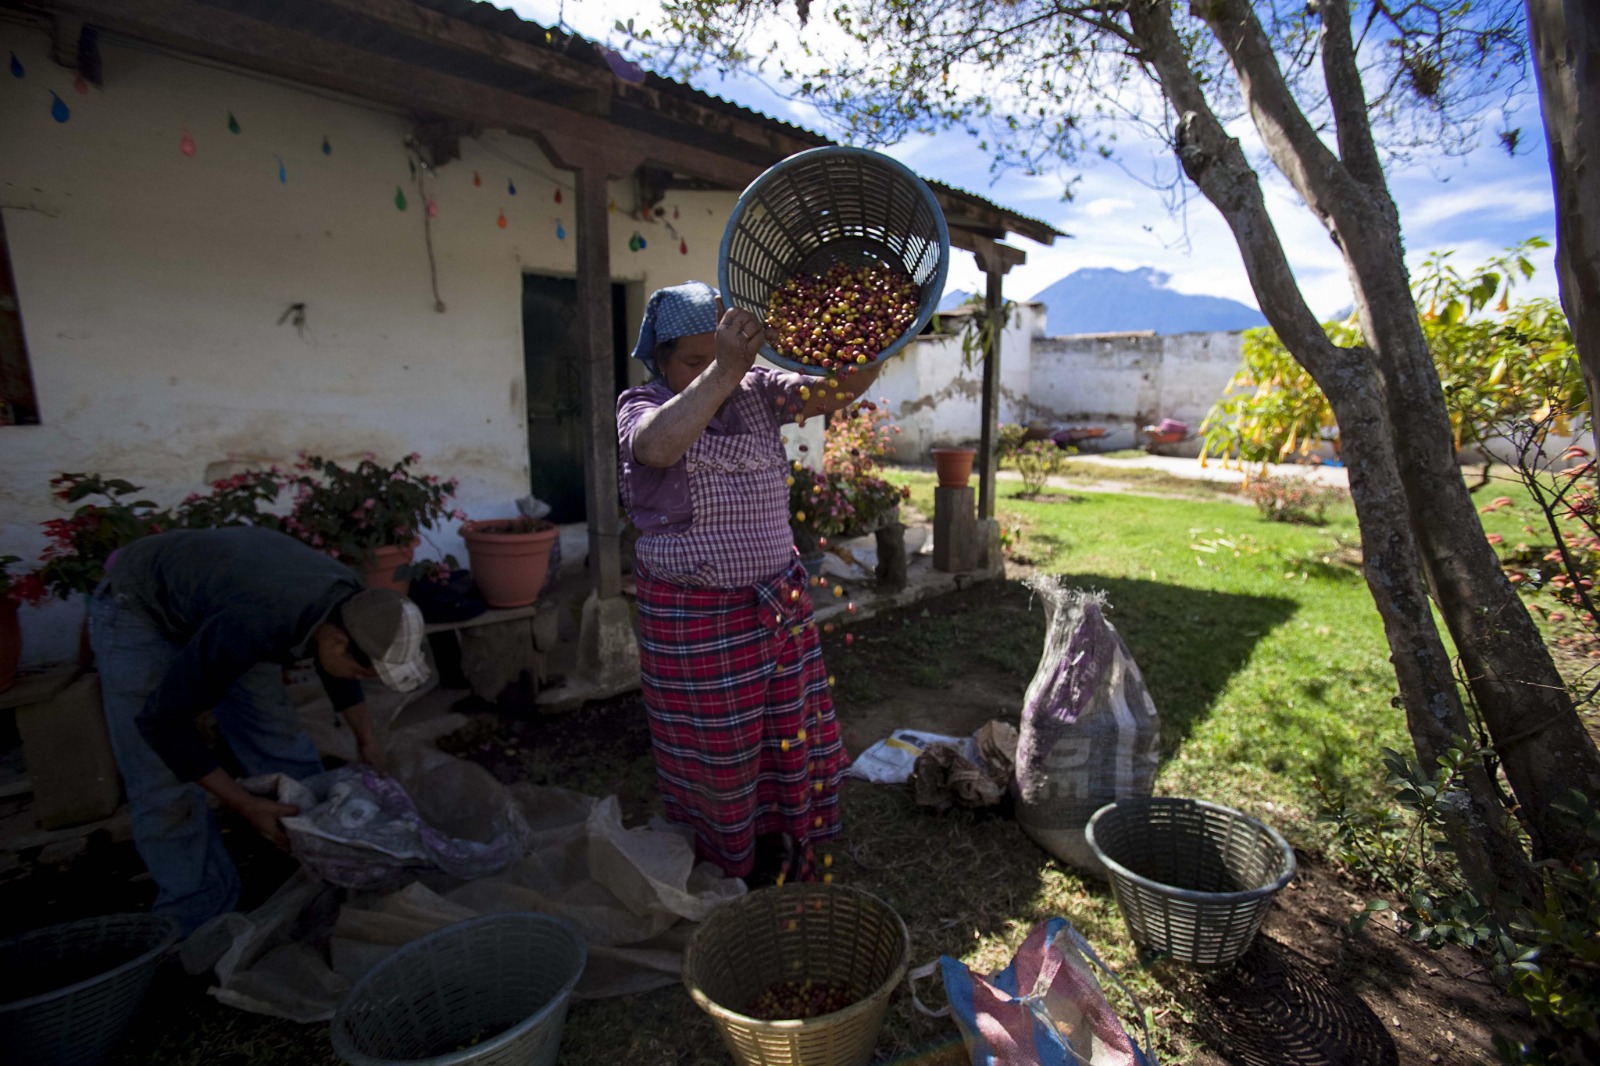 Una mujer separa granos de café de buena o "primera" calidad en una finca. (Foto Prensa Libre: Antonio Jiménez)'